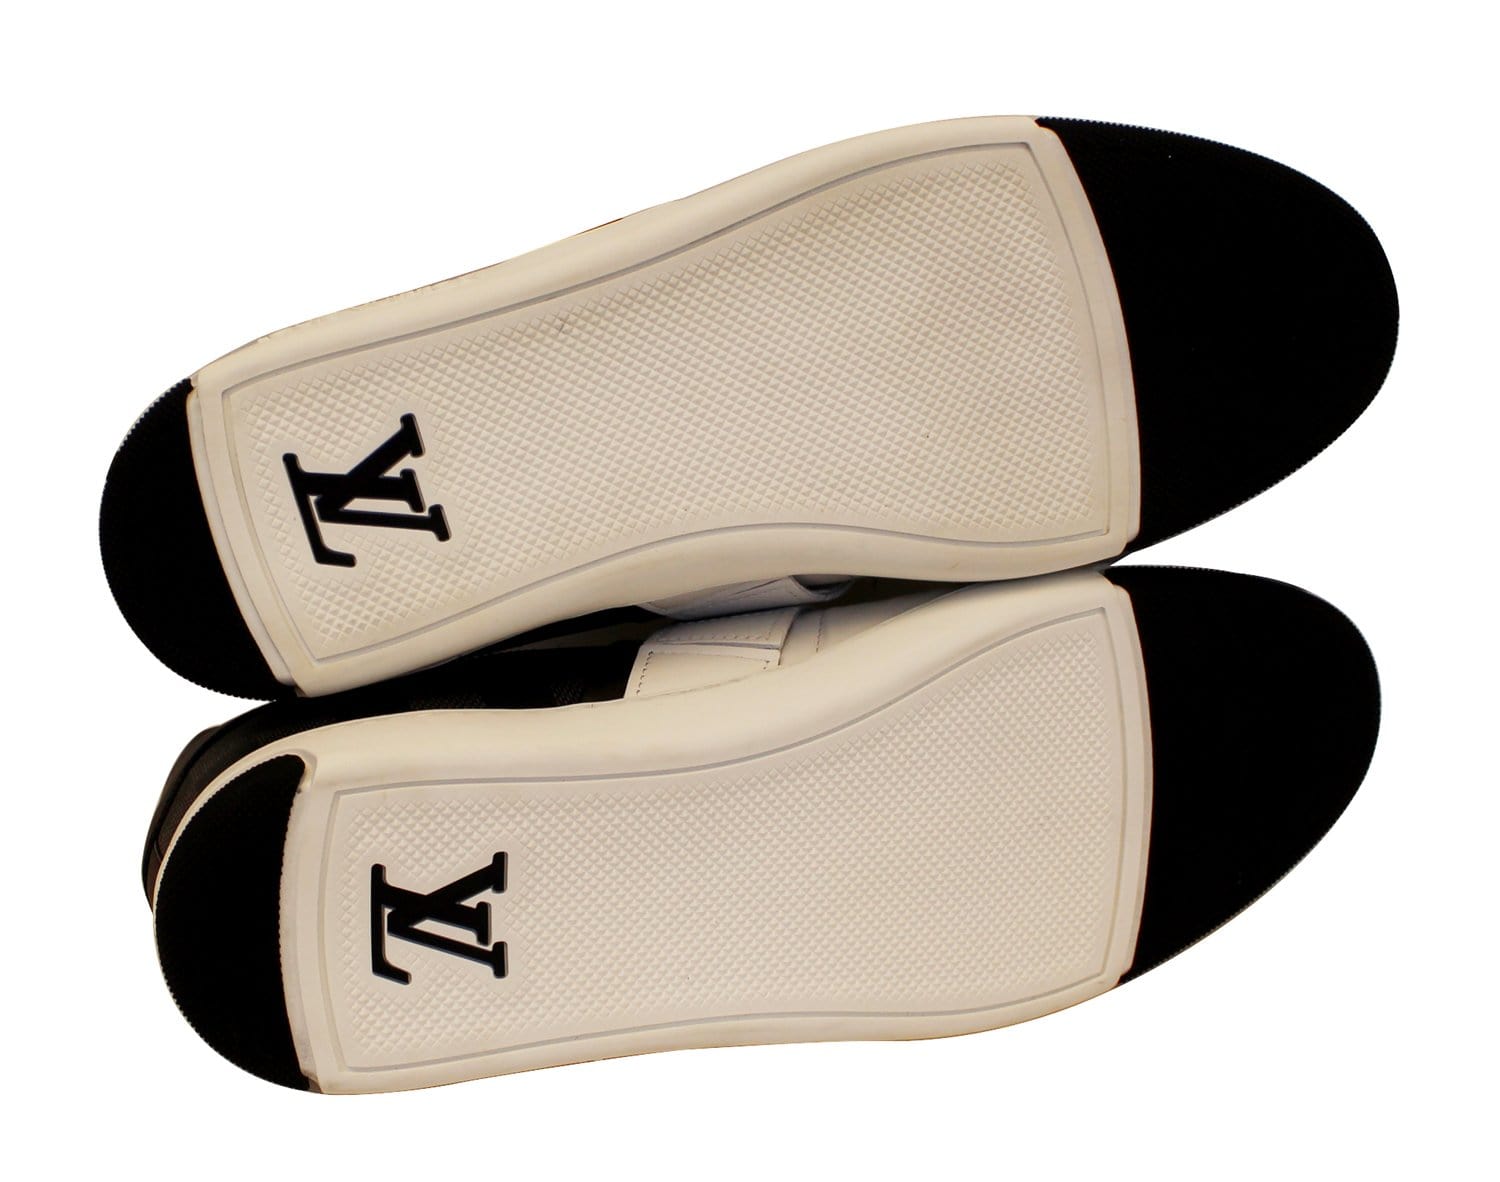 Louis Vuitton, Monogram Men's Low-Top Sneakers